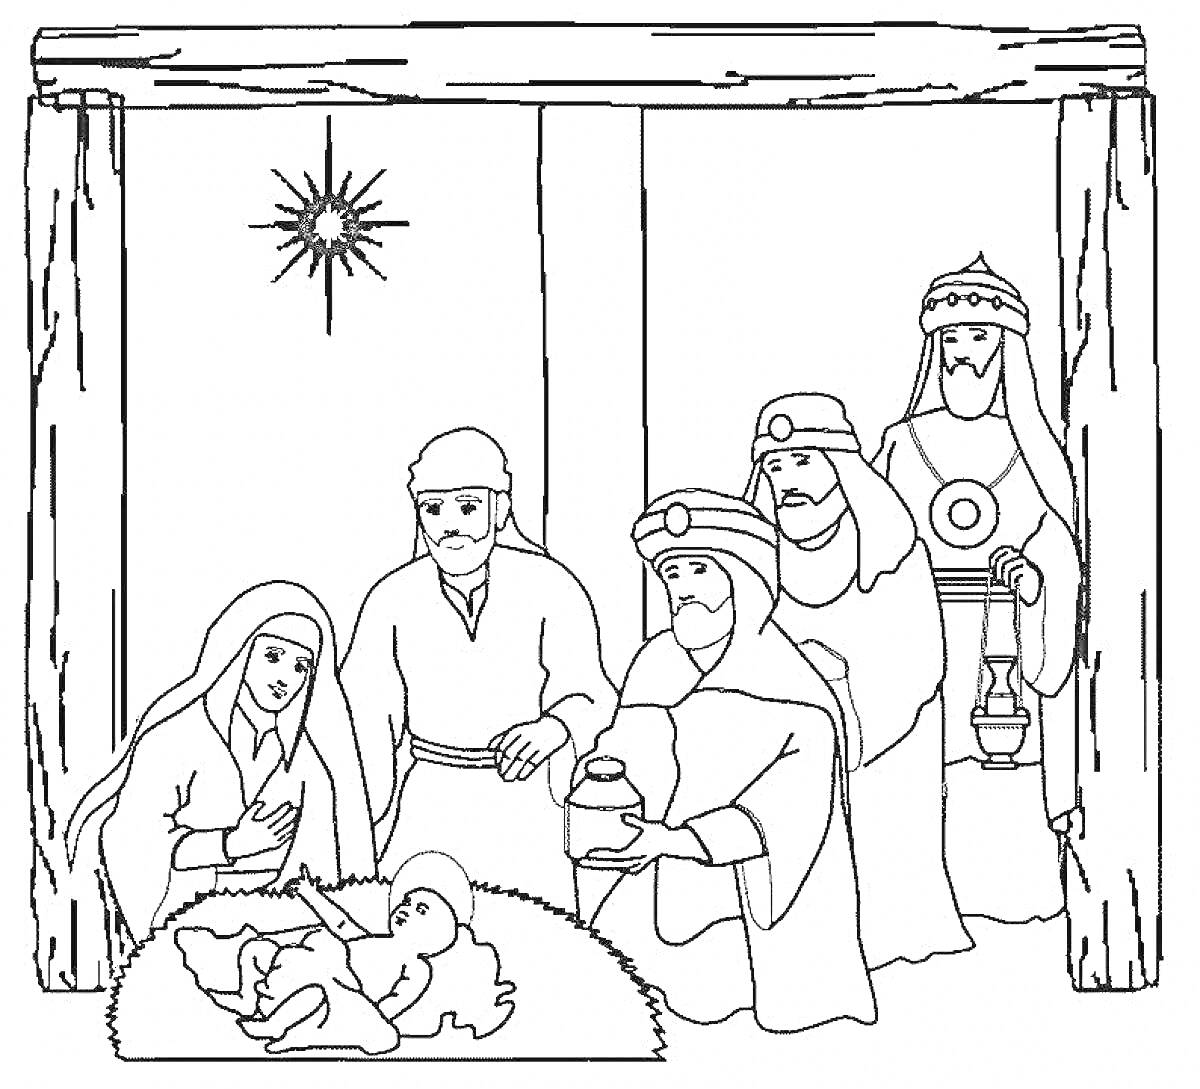 Рождественская сцена с волхвами, младенцем Иисусом, Марией, Иосифом и звездой